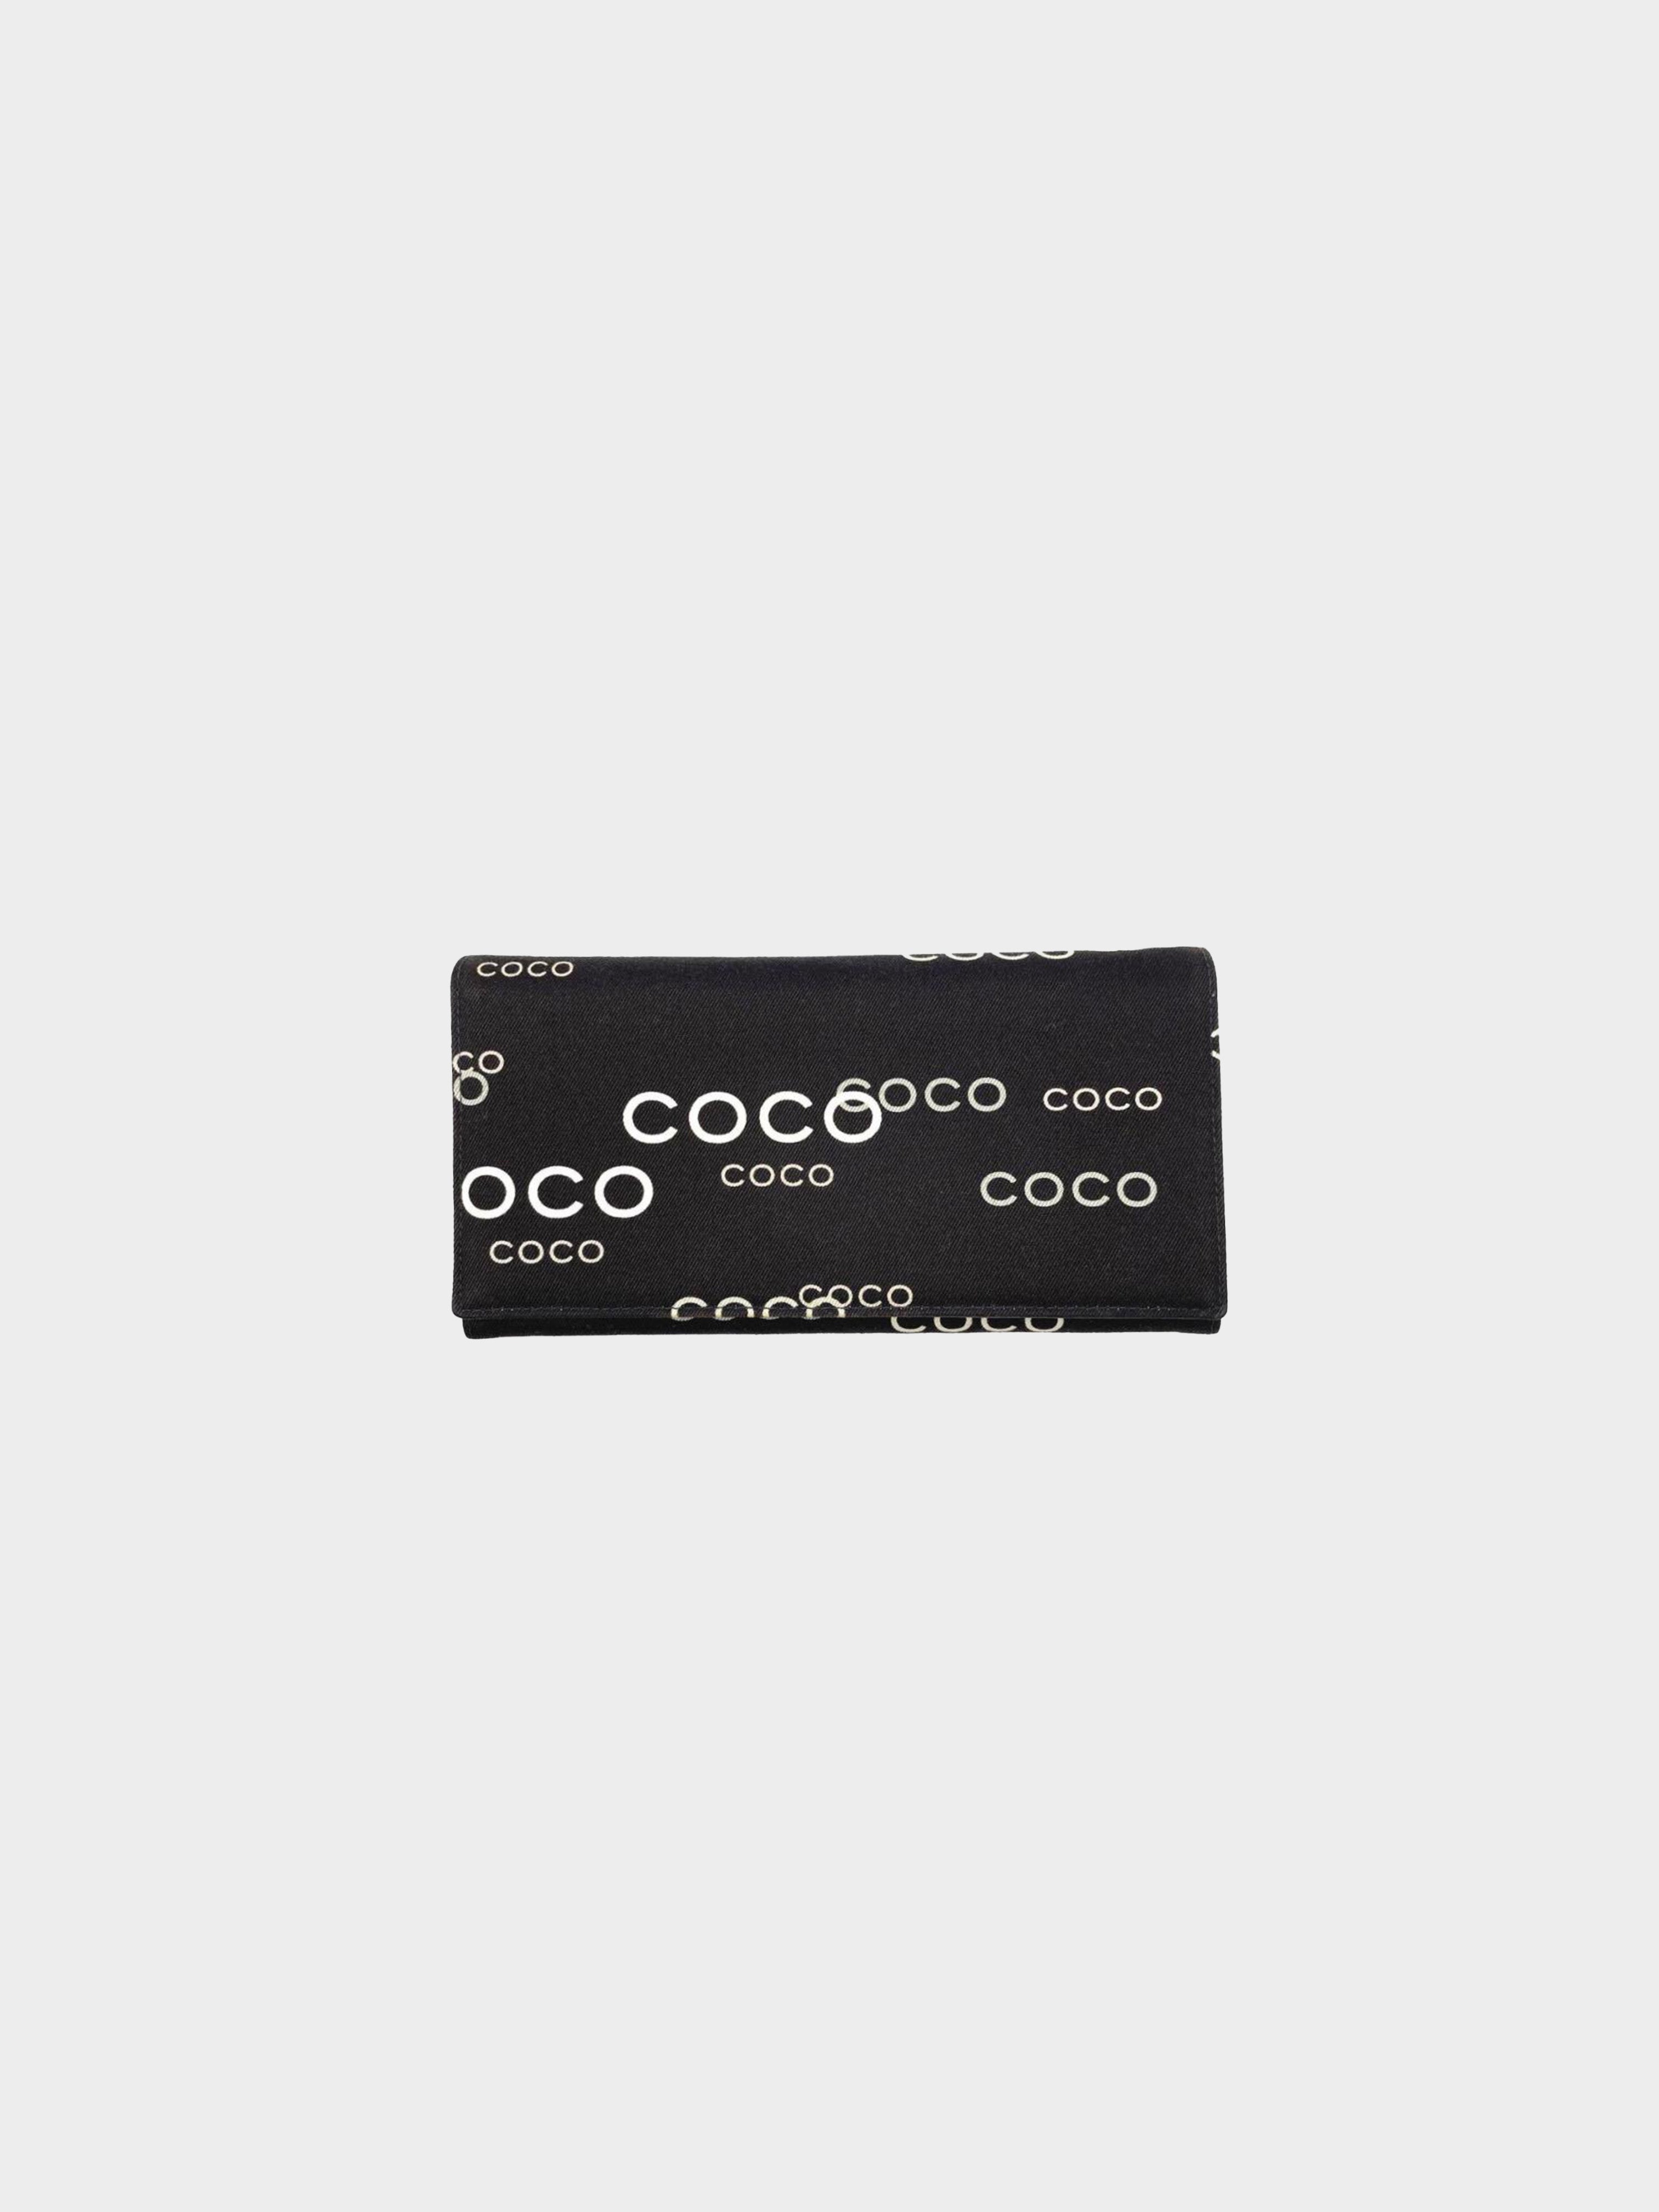 Chanel 2002 Coco Canvas Wallet